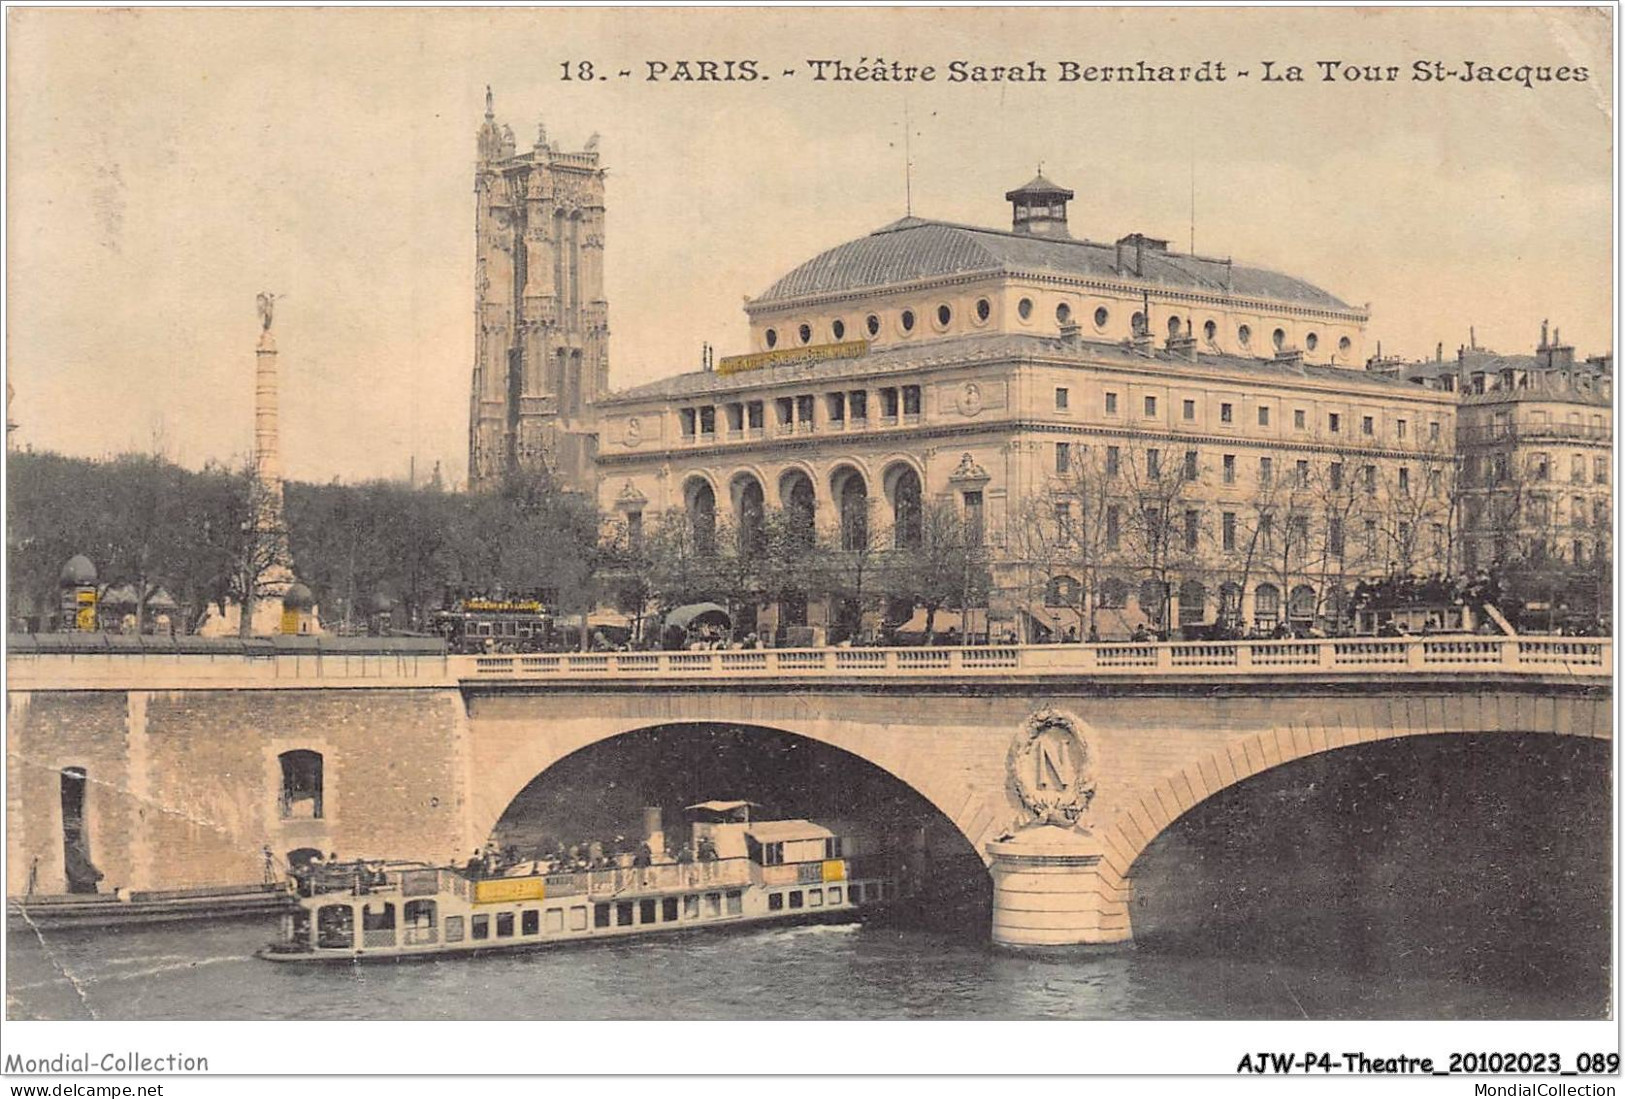 AJWP4-0374 - THEATRE - PARIS - THEATRE SARAH-BERNHARDT - LA TOUR ST-JACQUES  - Theatre